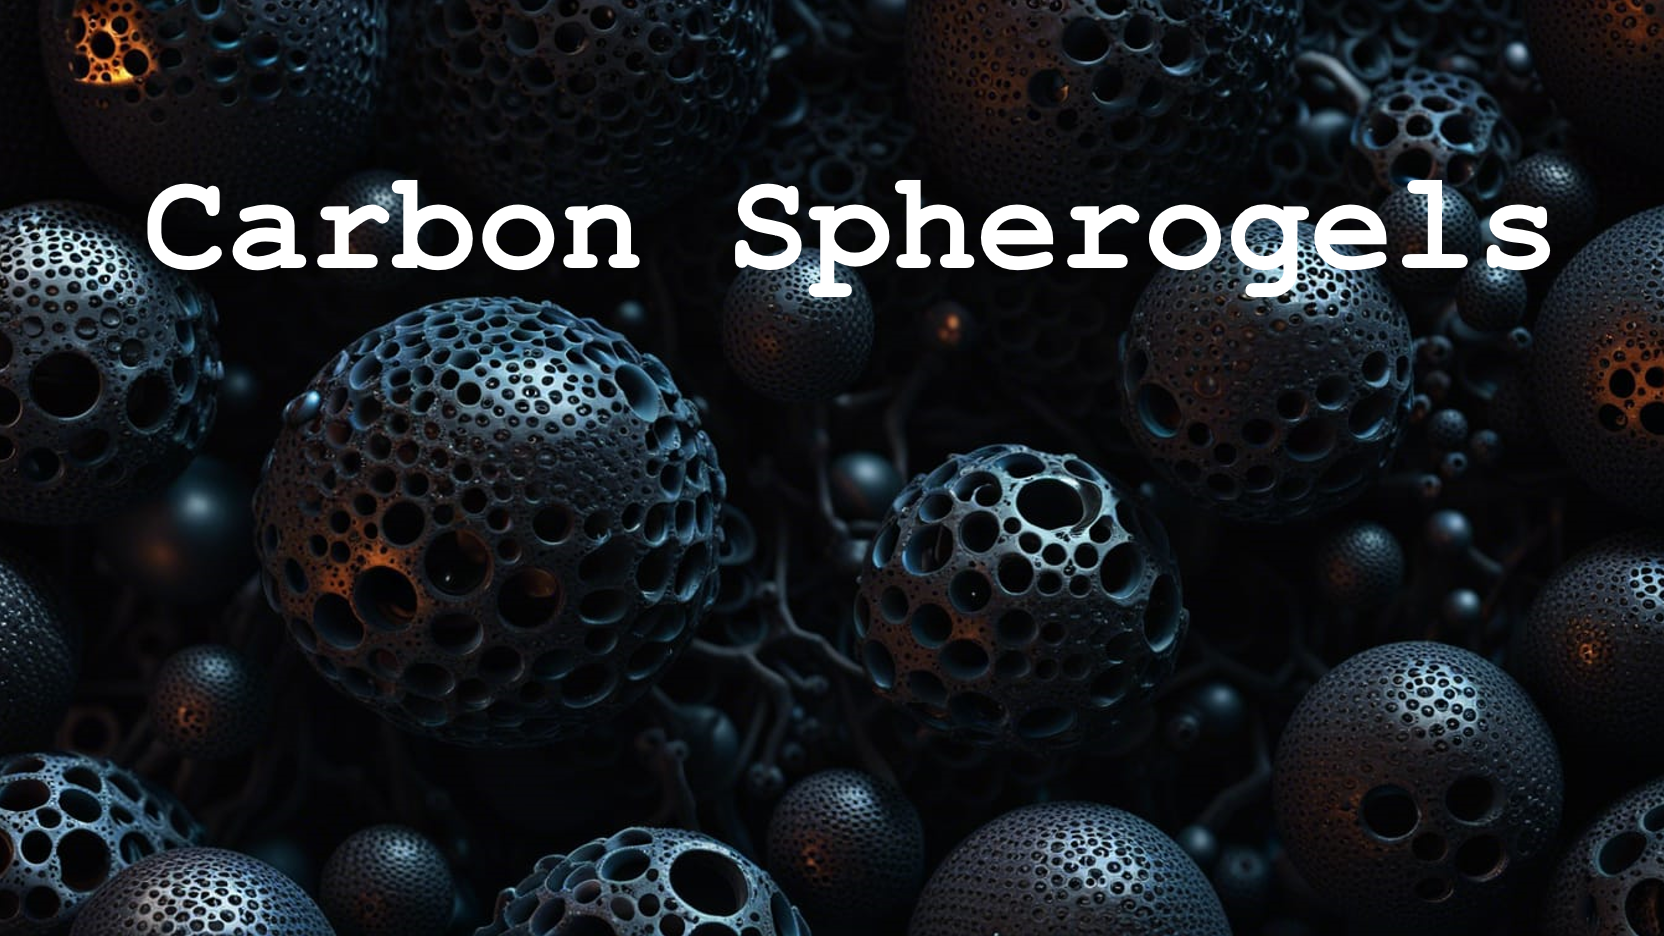 Carbon Spherogels